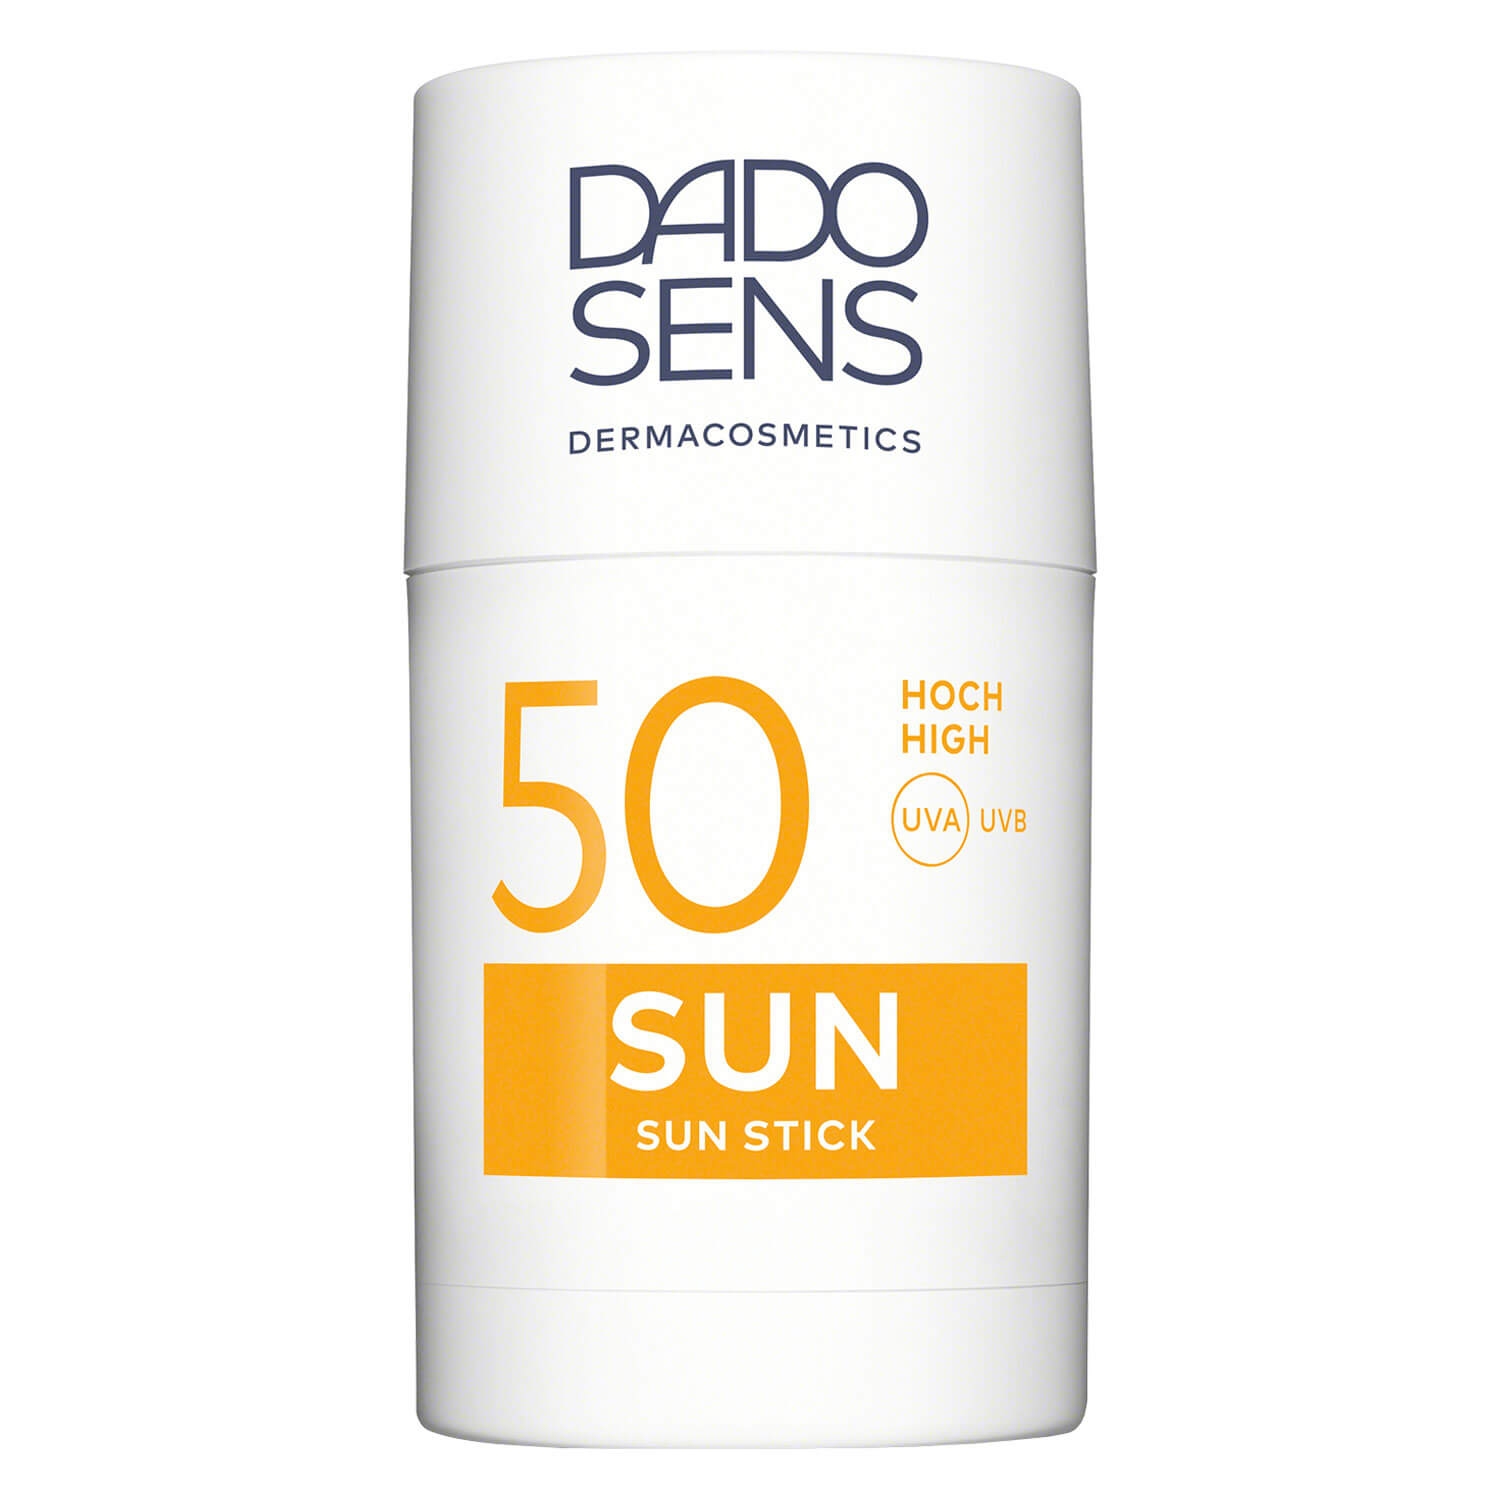 Produktbild von DADO SENS SUN - Sun Stick SPF 50